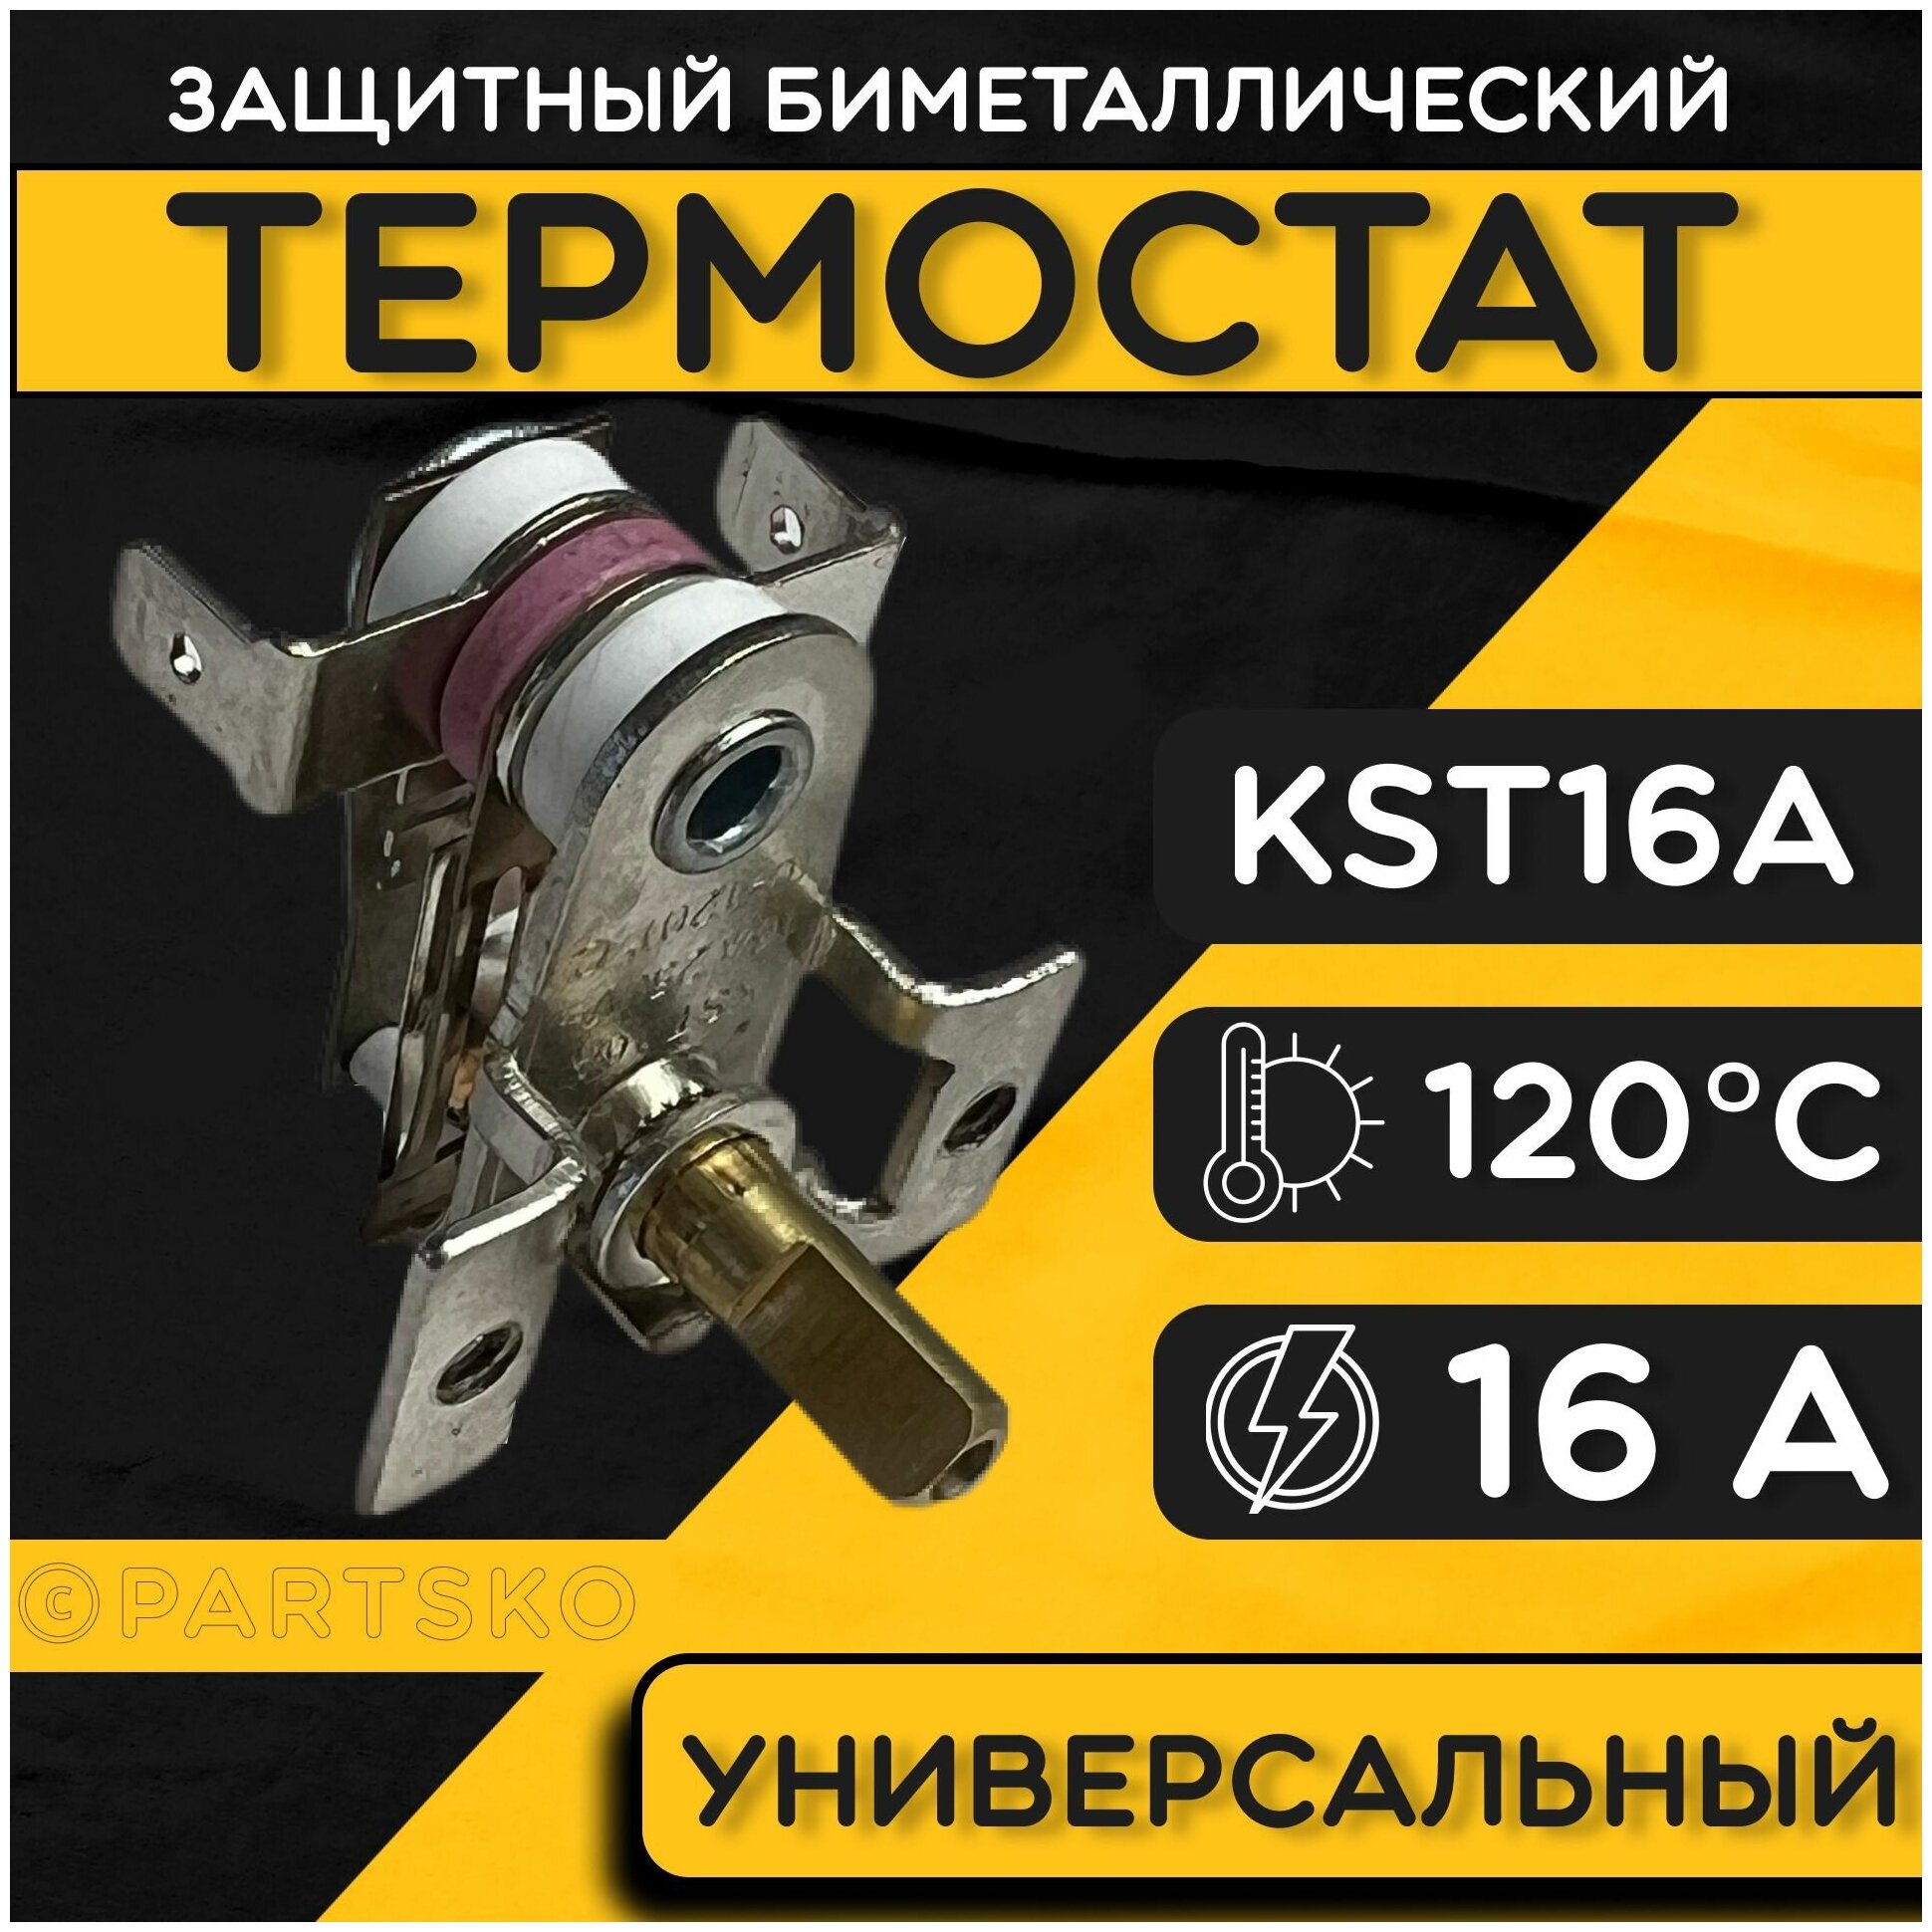 Термостат для водонагревателя биметаллический KST, 16A, до 120 градусов. Термодатчик / регулятор температуры универсальный, самовозвратный.